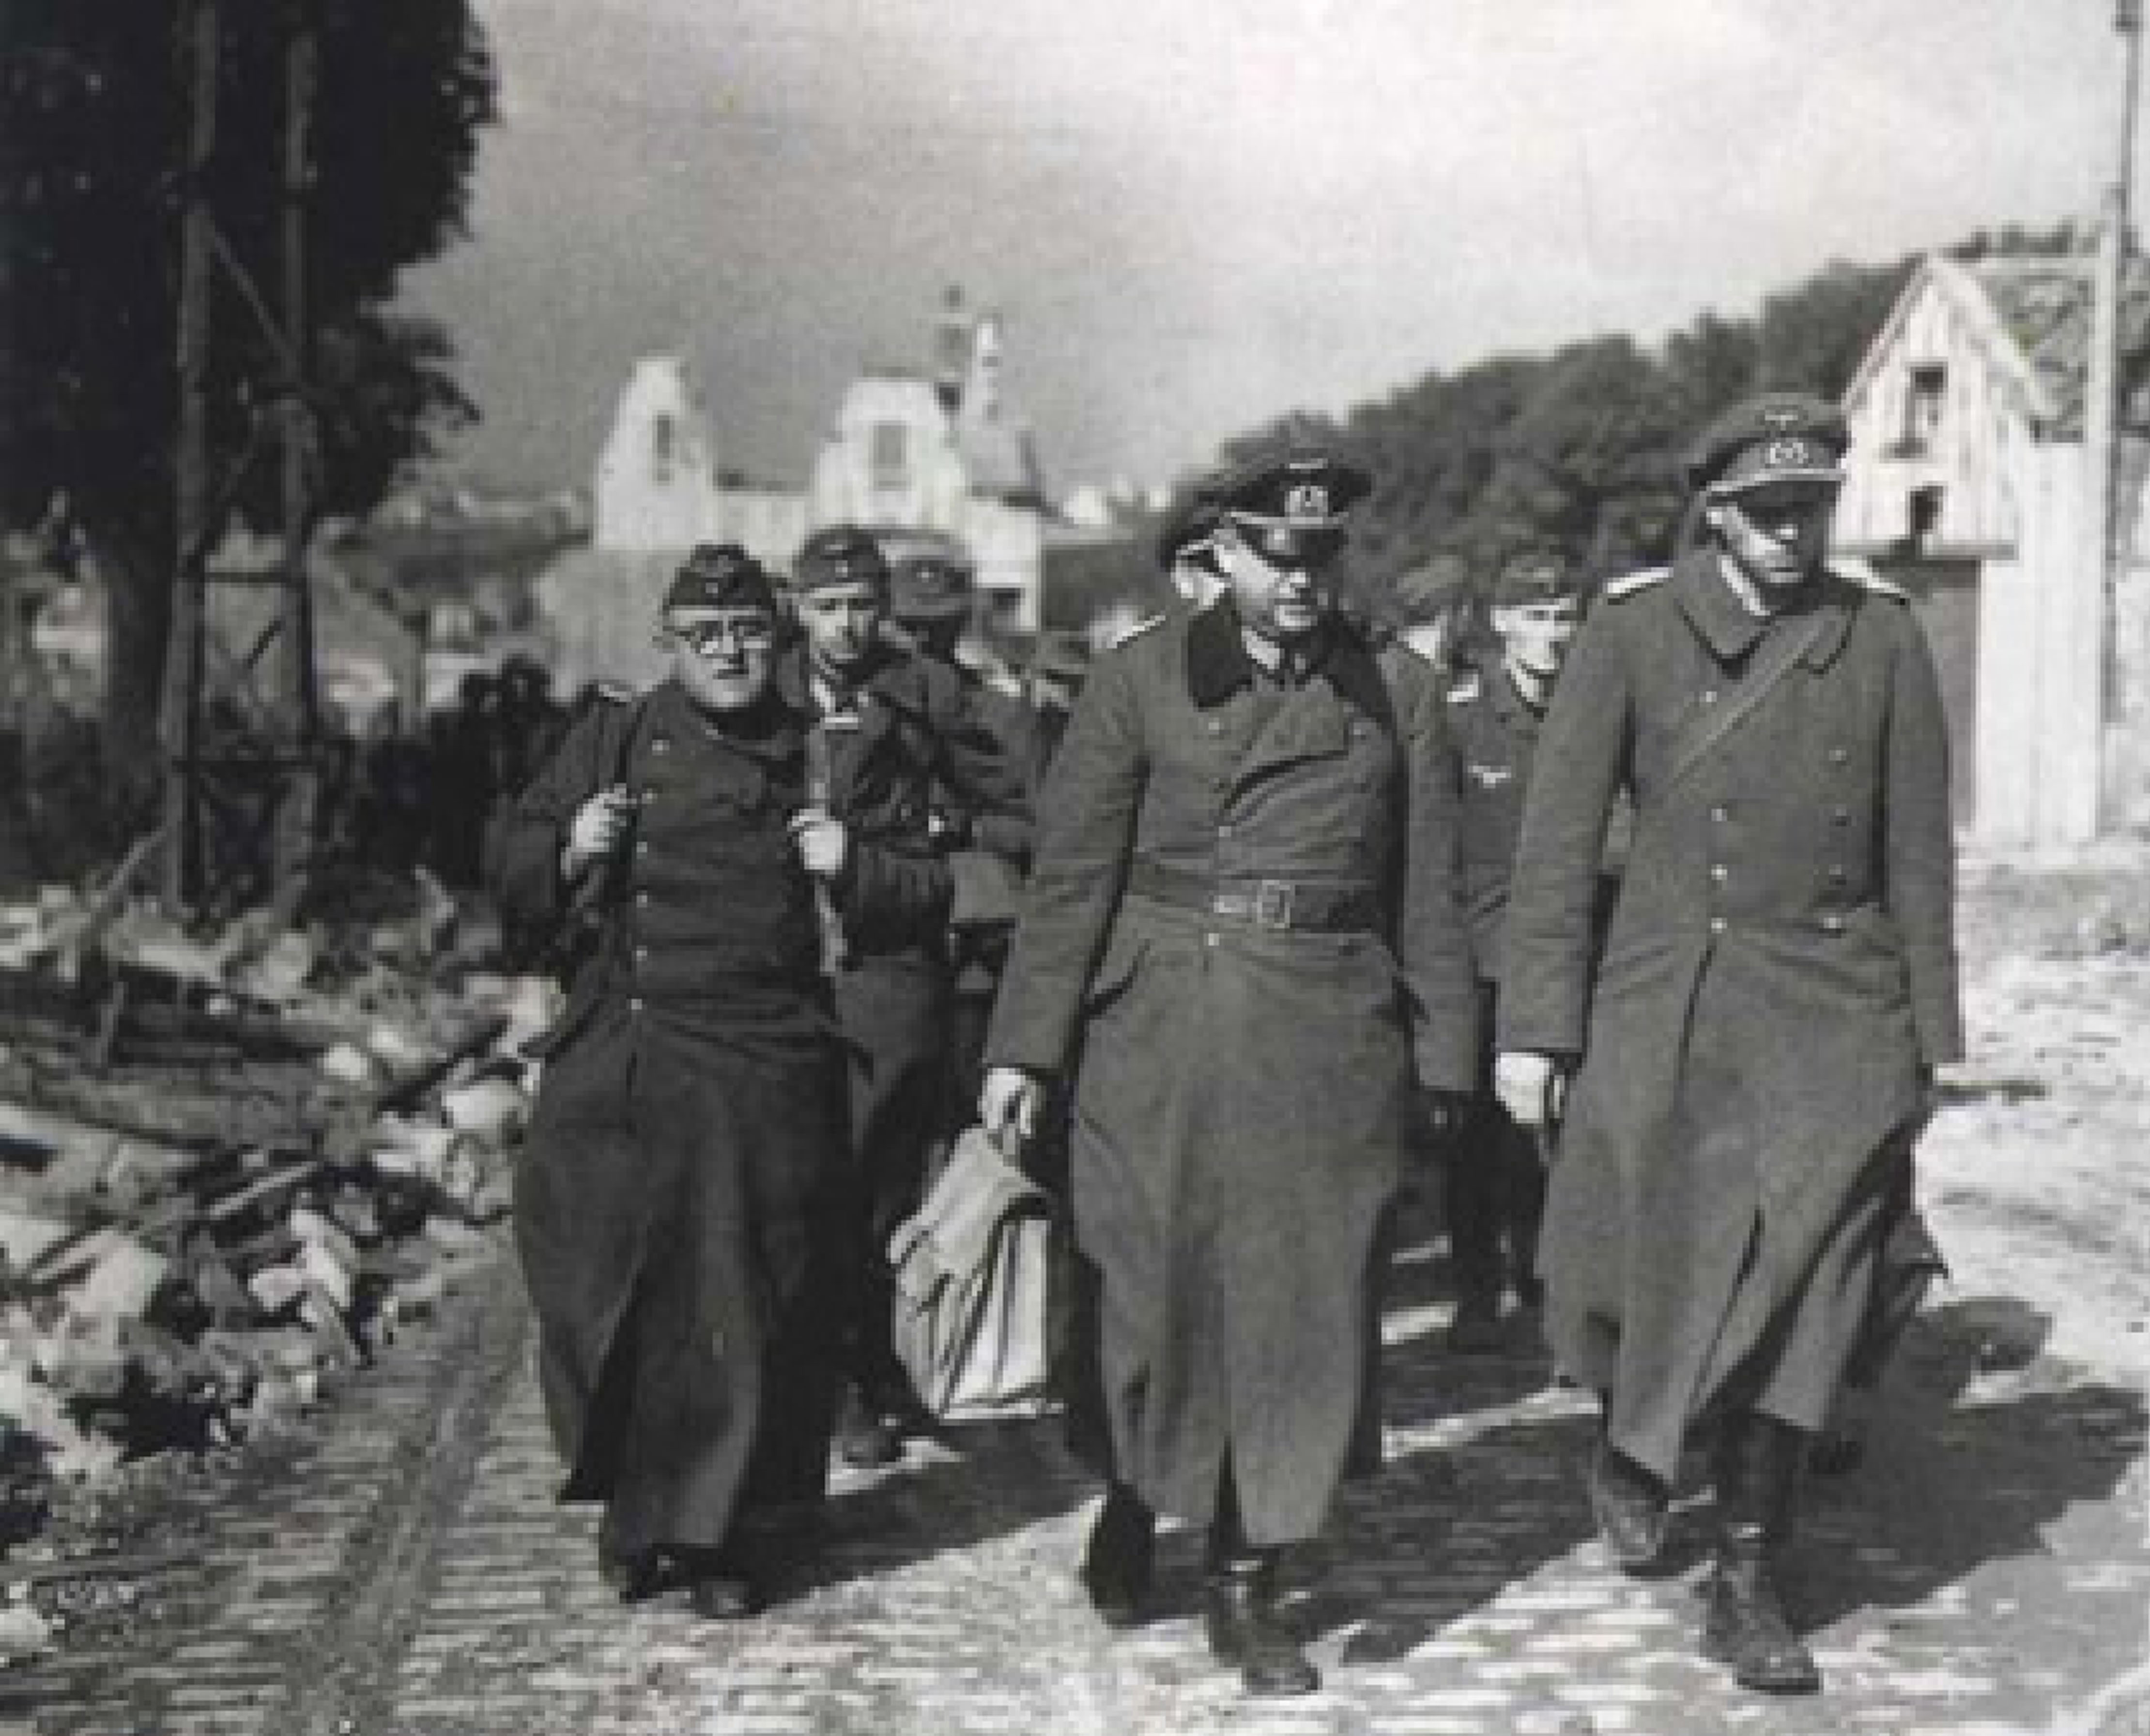 Prisonniers allemands descendants vers les plages, l'avance de Patton les à surpris et bousculés